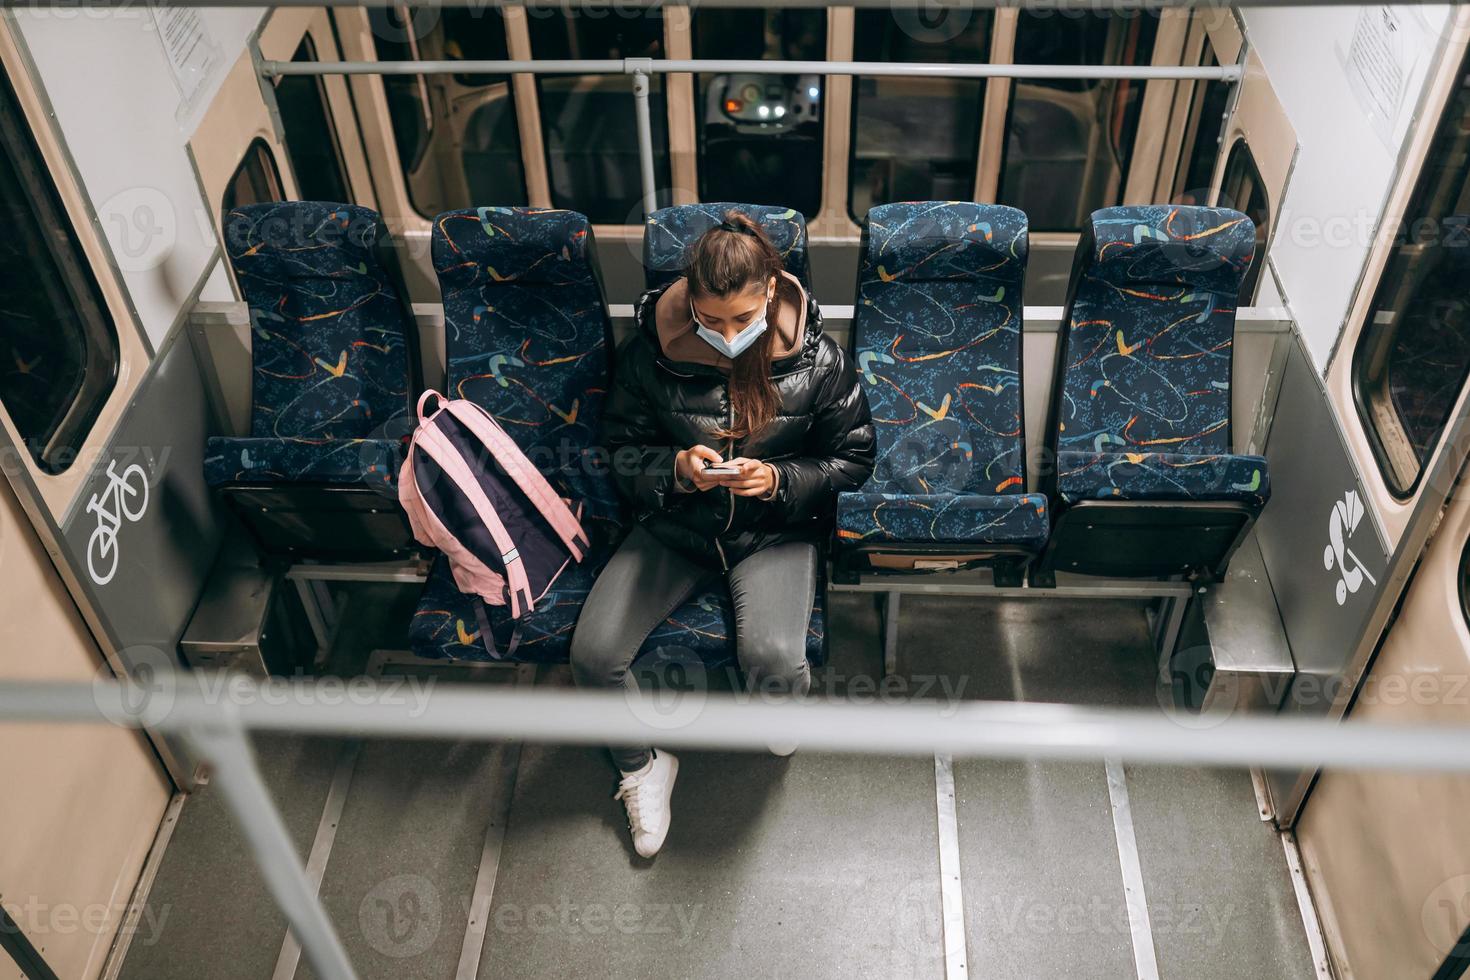 jeune femme avec masque voyageant dans les transports en commun. photo